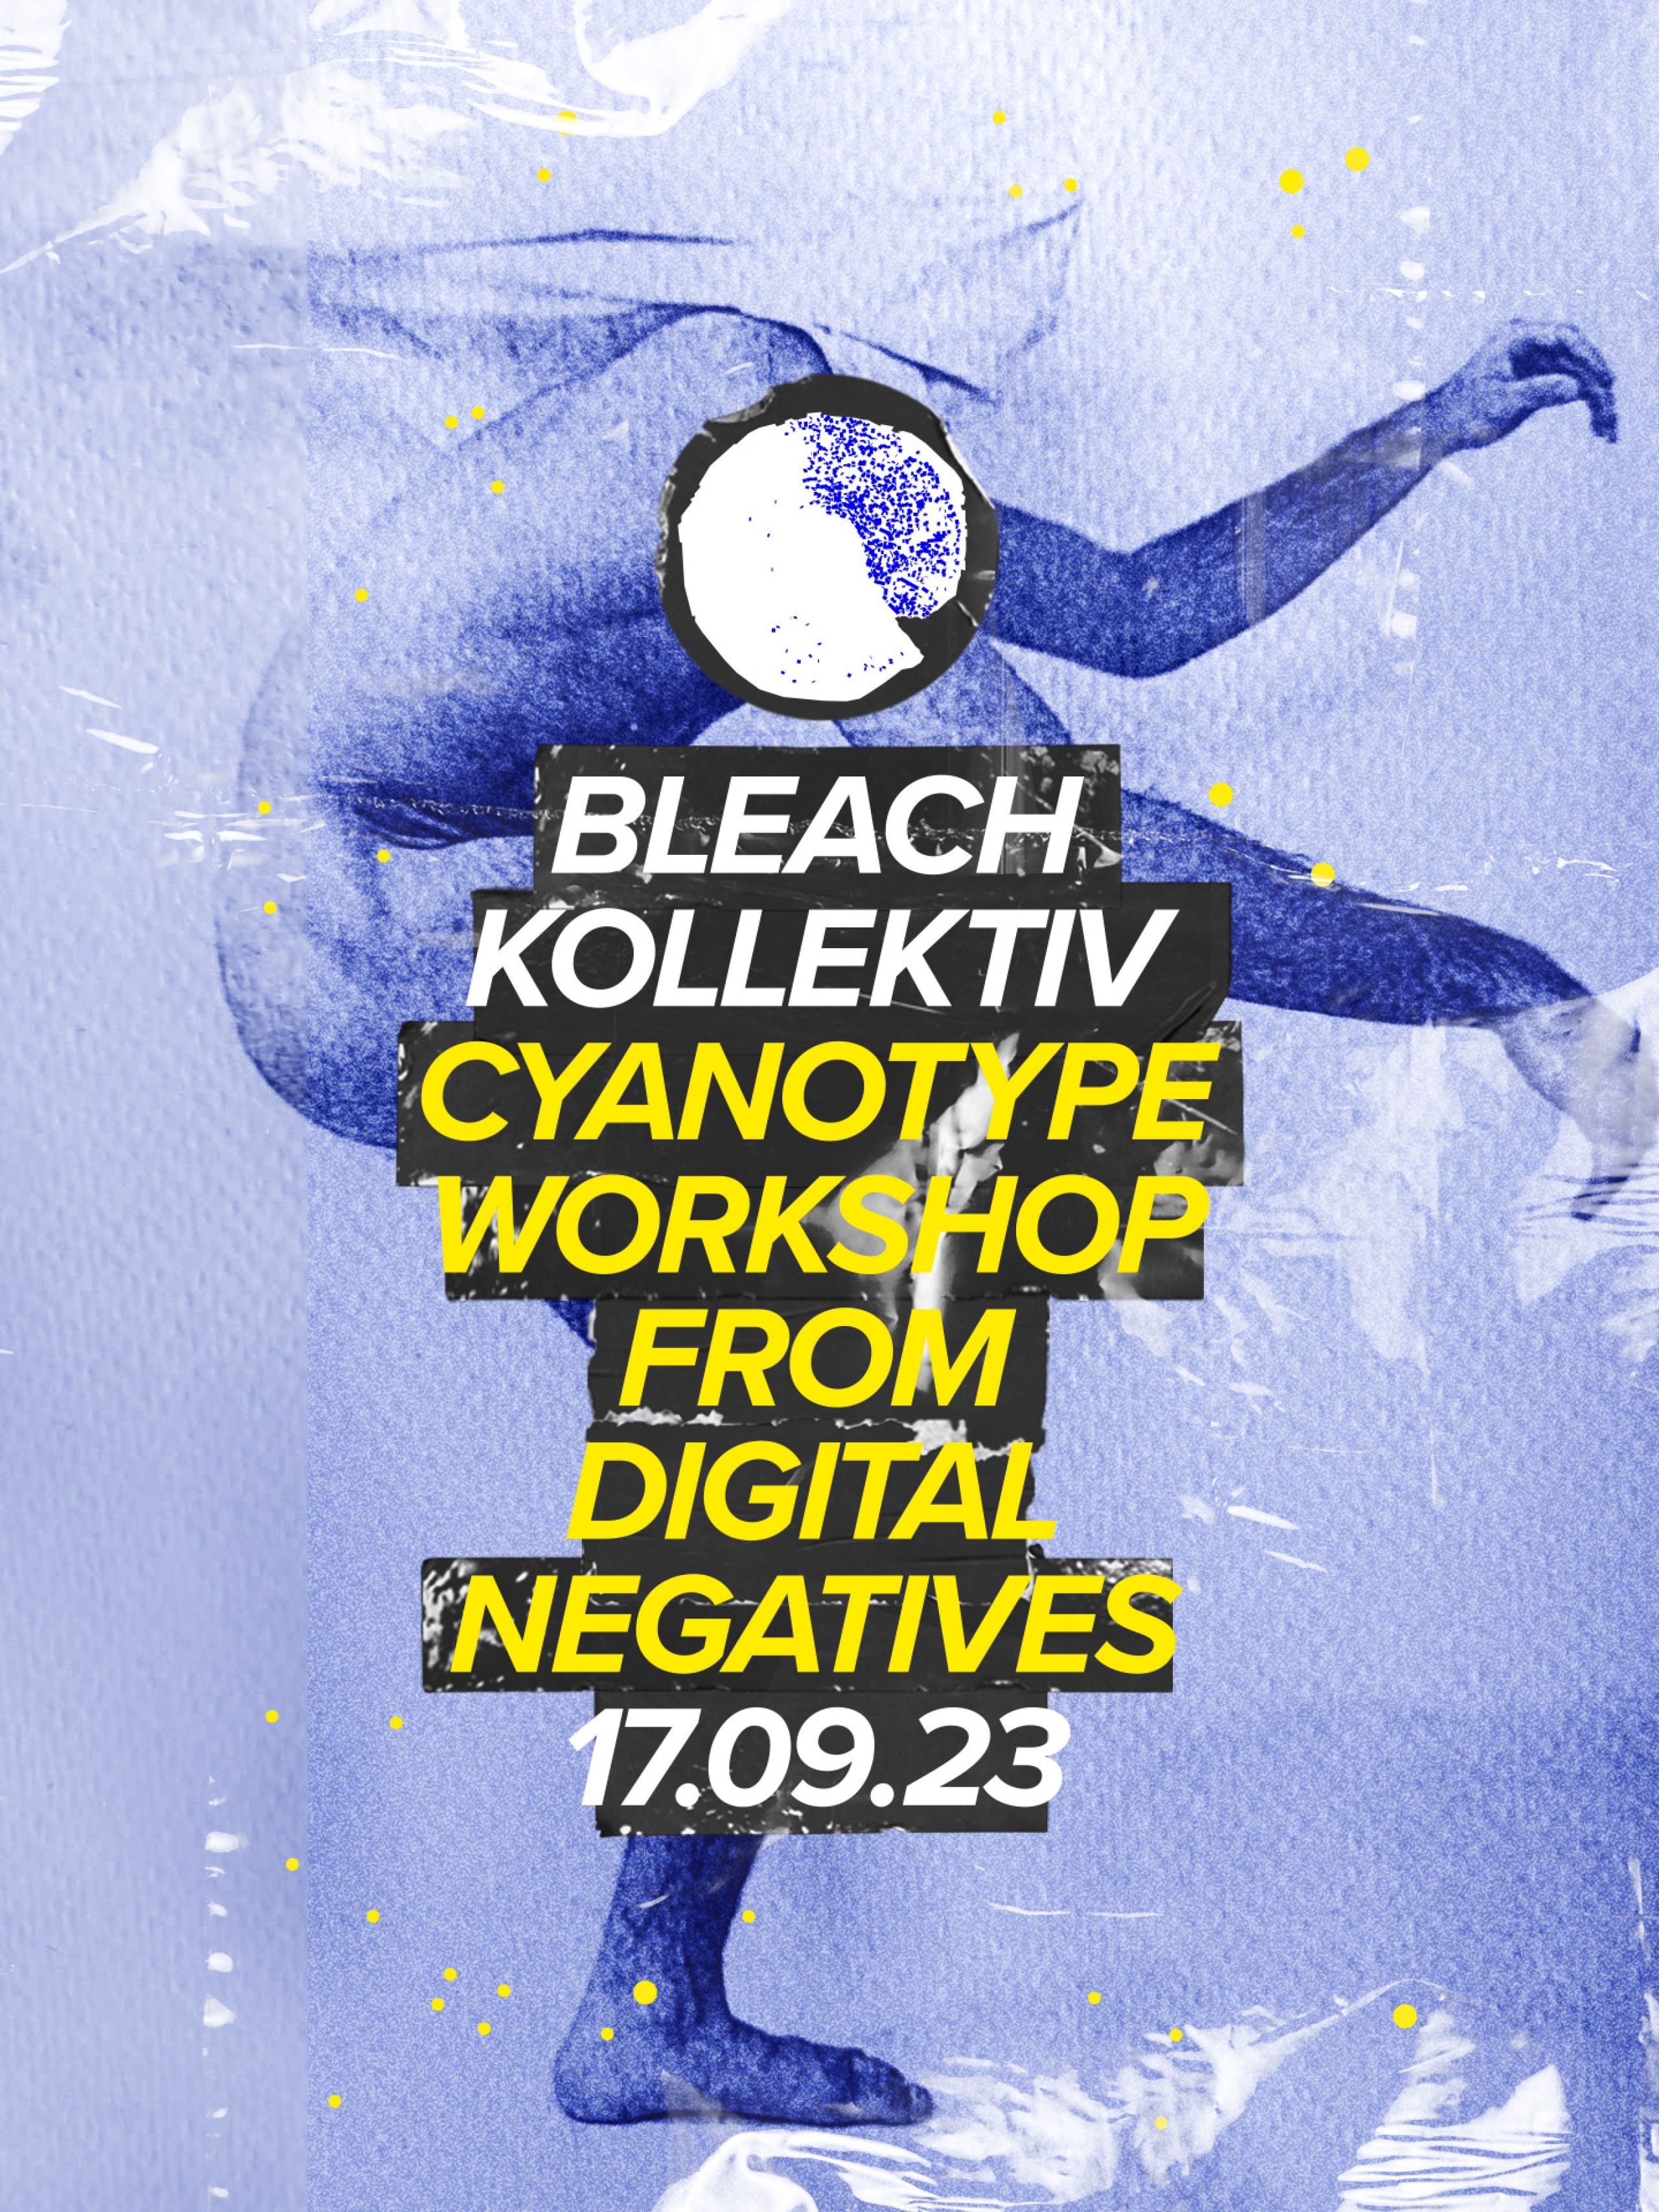 Cyanotype Workshop from Digital Negatives @Bleach Kollektiv